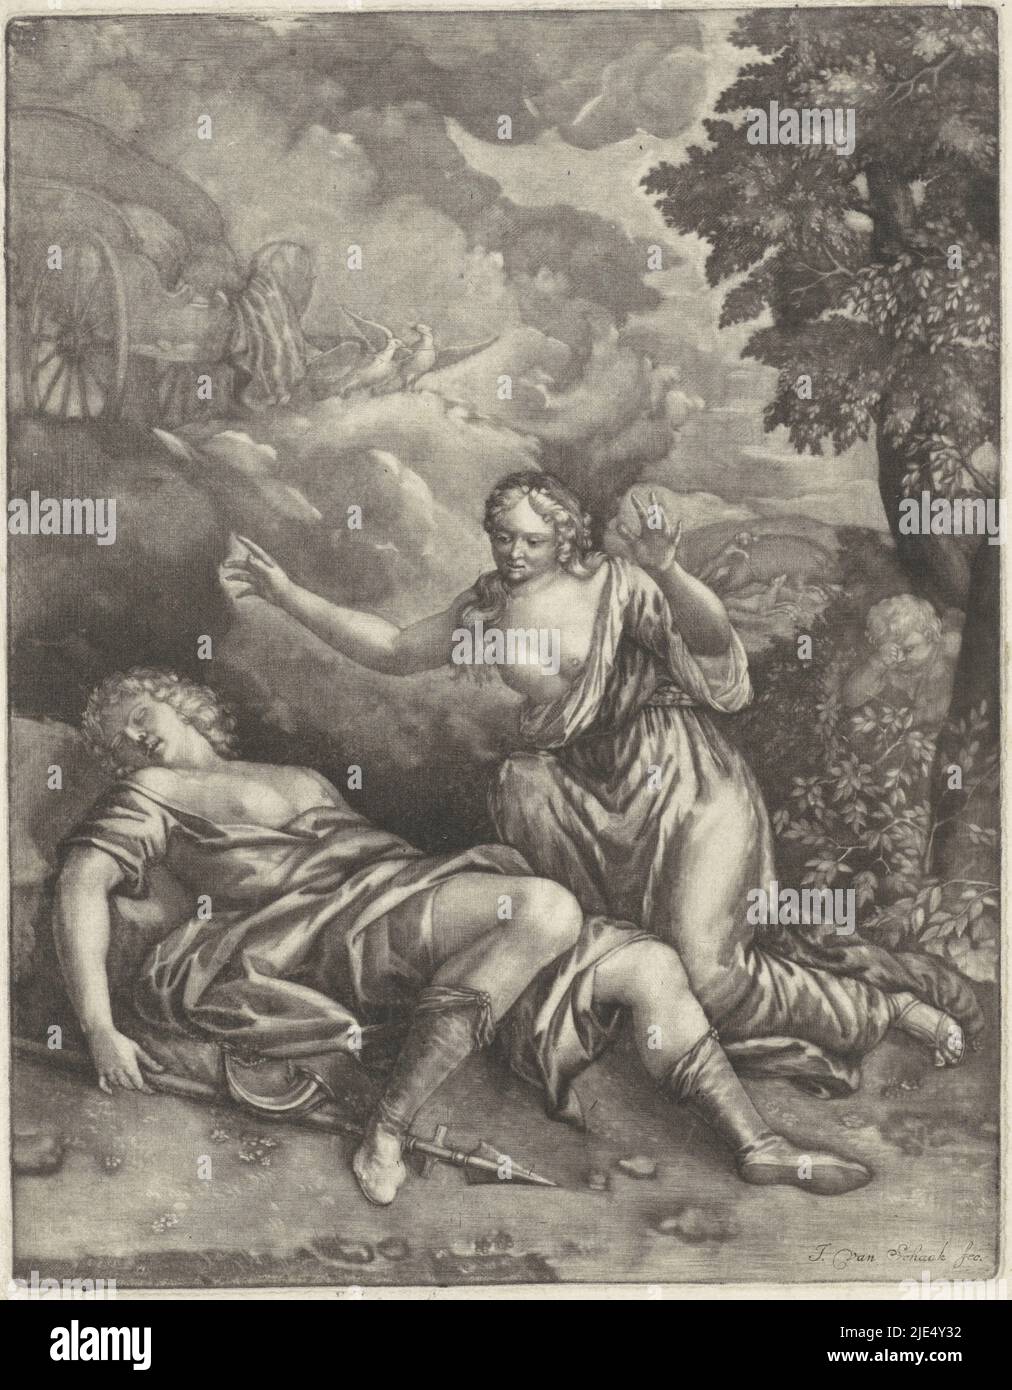 Vénus s'agenouille à Adonis. Son char vide attend dans les nuages, Vénus et Adonis, imprimerie: Jeremias van Schaak, (mentionné sur l'objet), pays-Bas du Nord, 1690 - 1727, papier, h 234 mm × l 183 mm Banque D'Images